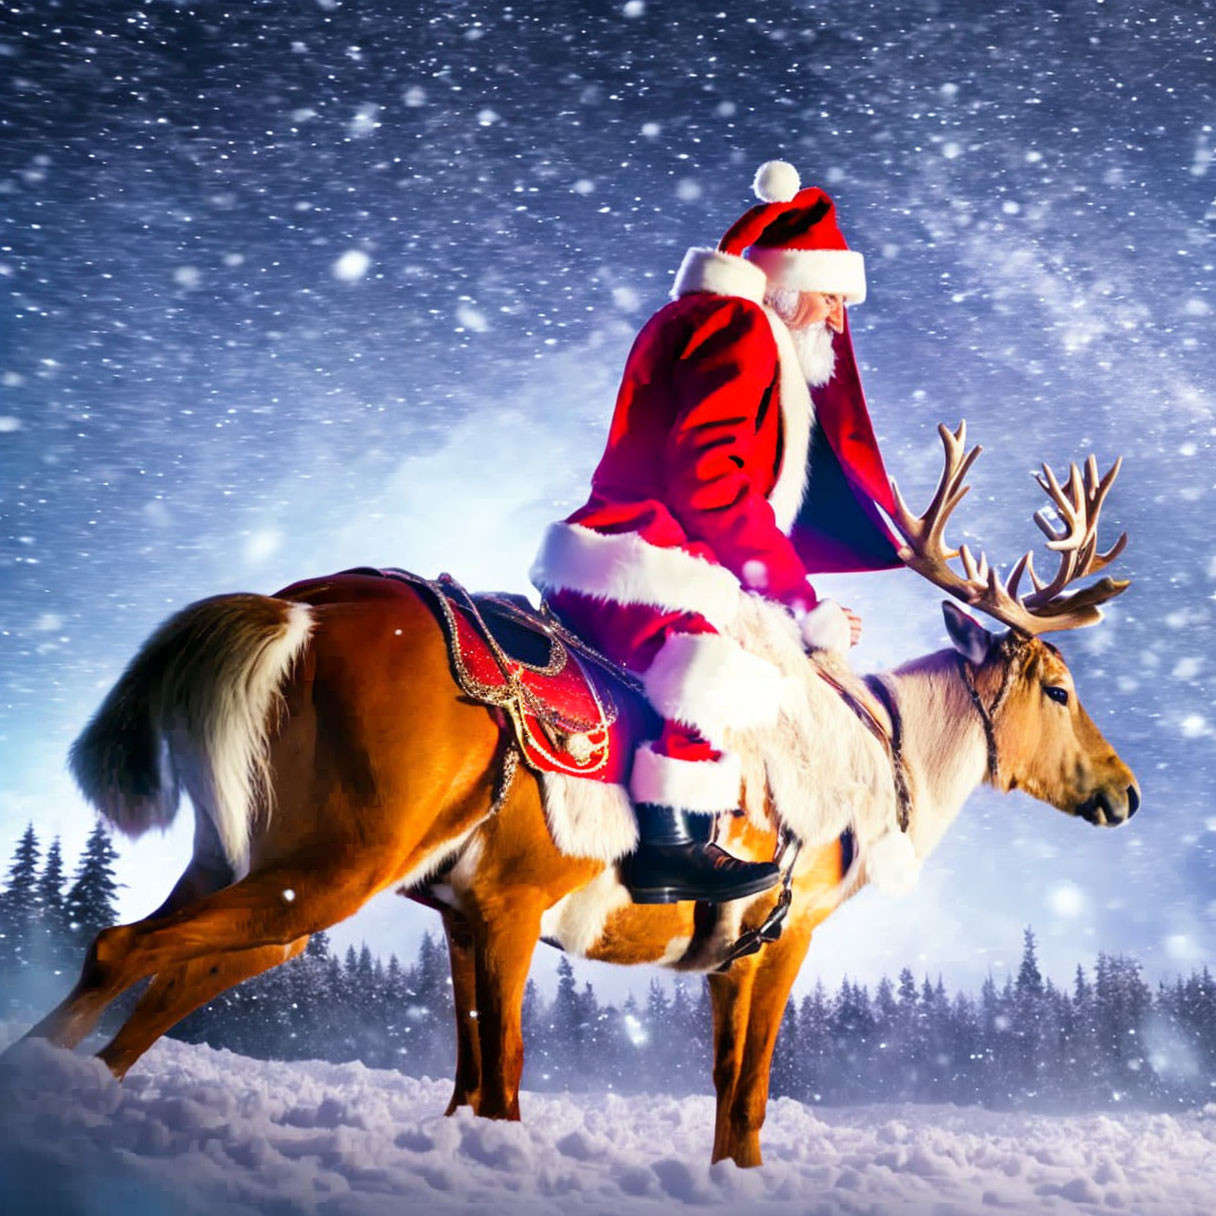 Santa Claus Riding Reindeer in Snowy Night Sky